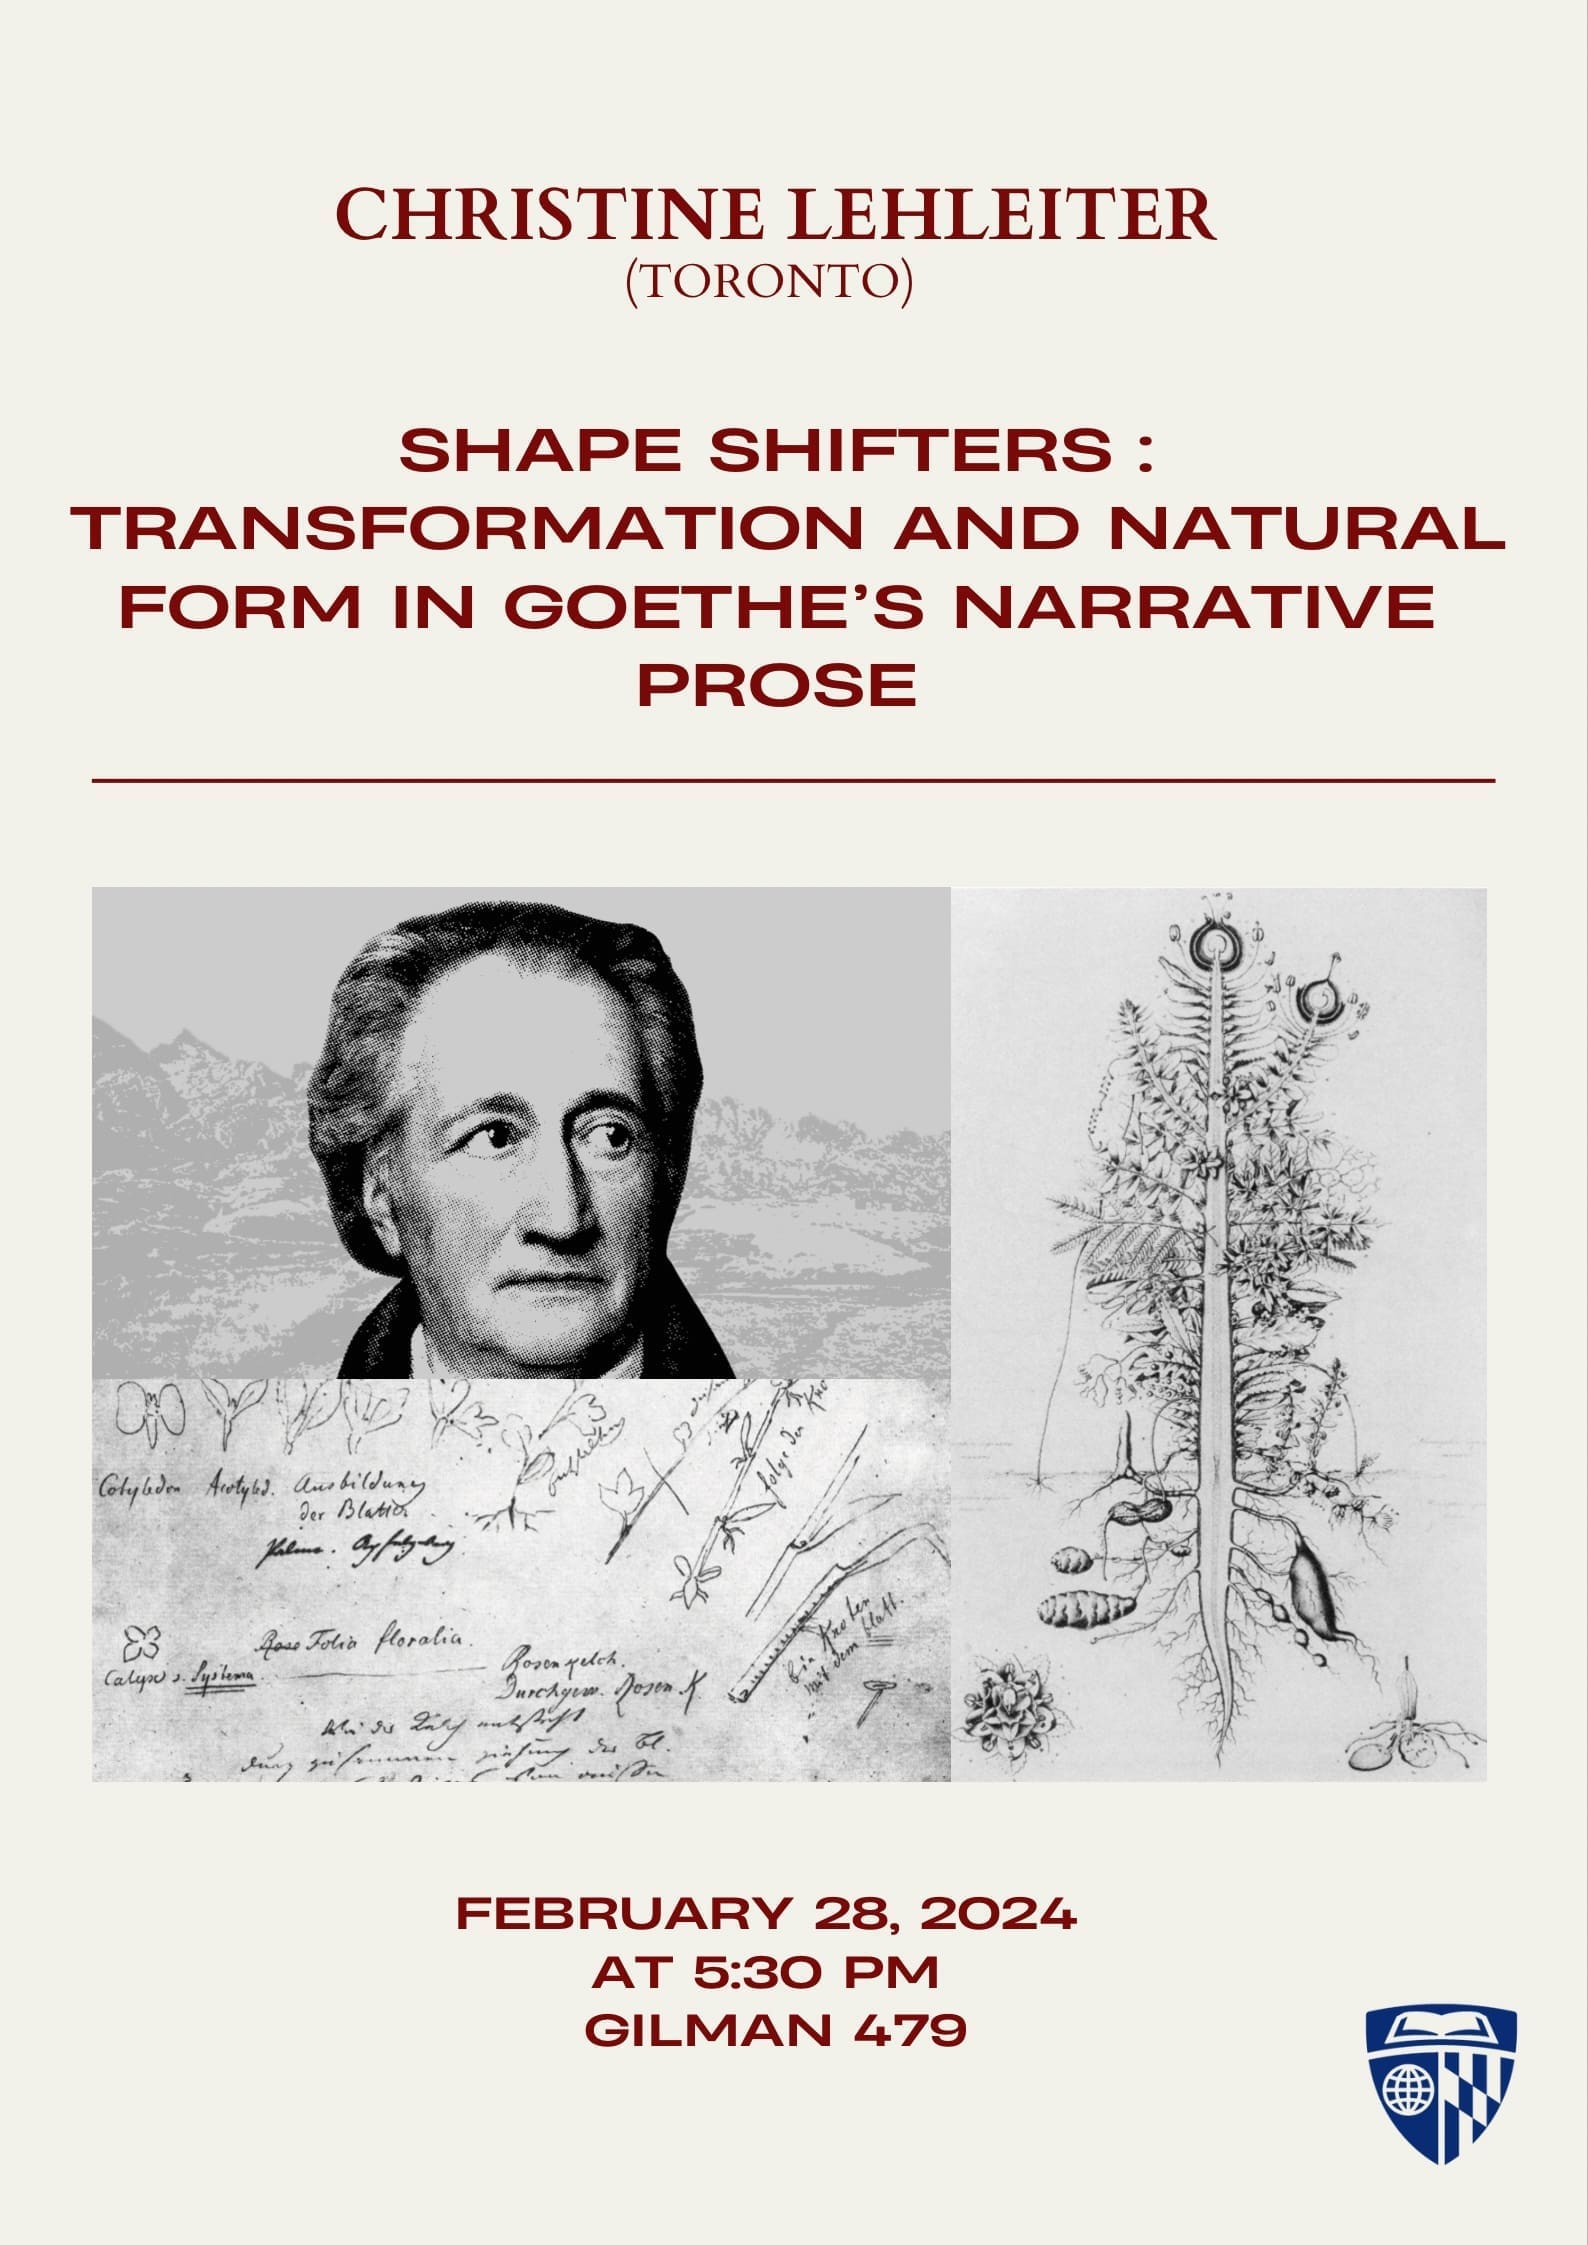 Christine Lehleiter, “Shape Shifters: Transformation & Natural Form in Goethe’s Narrative Prose” (2/28)